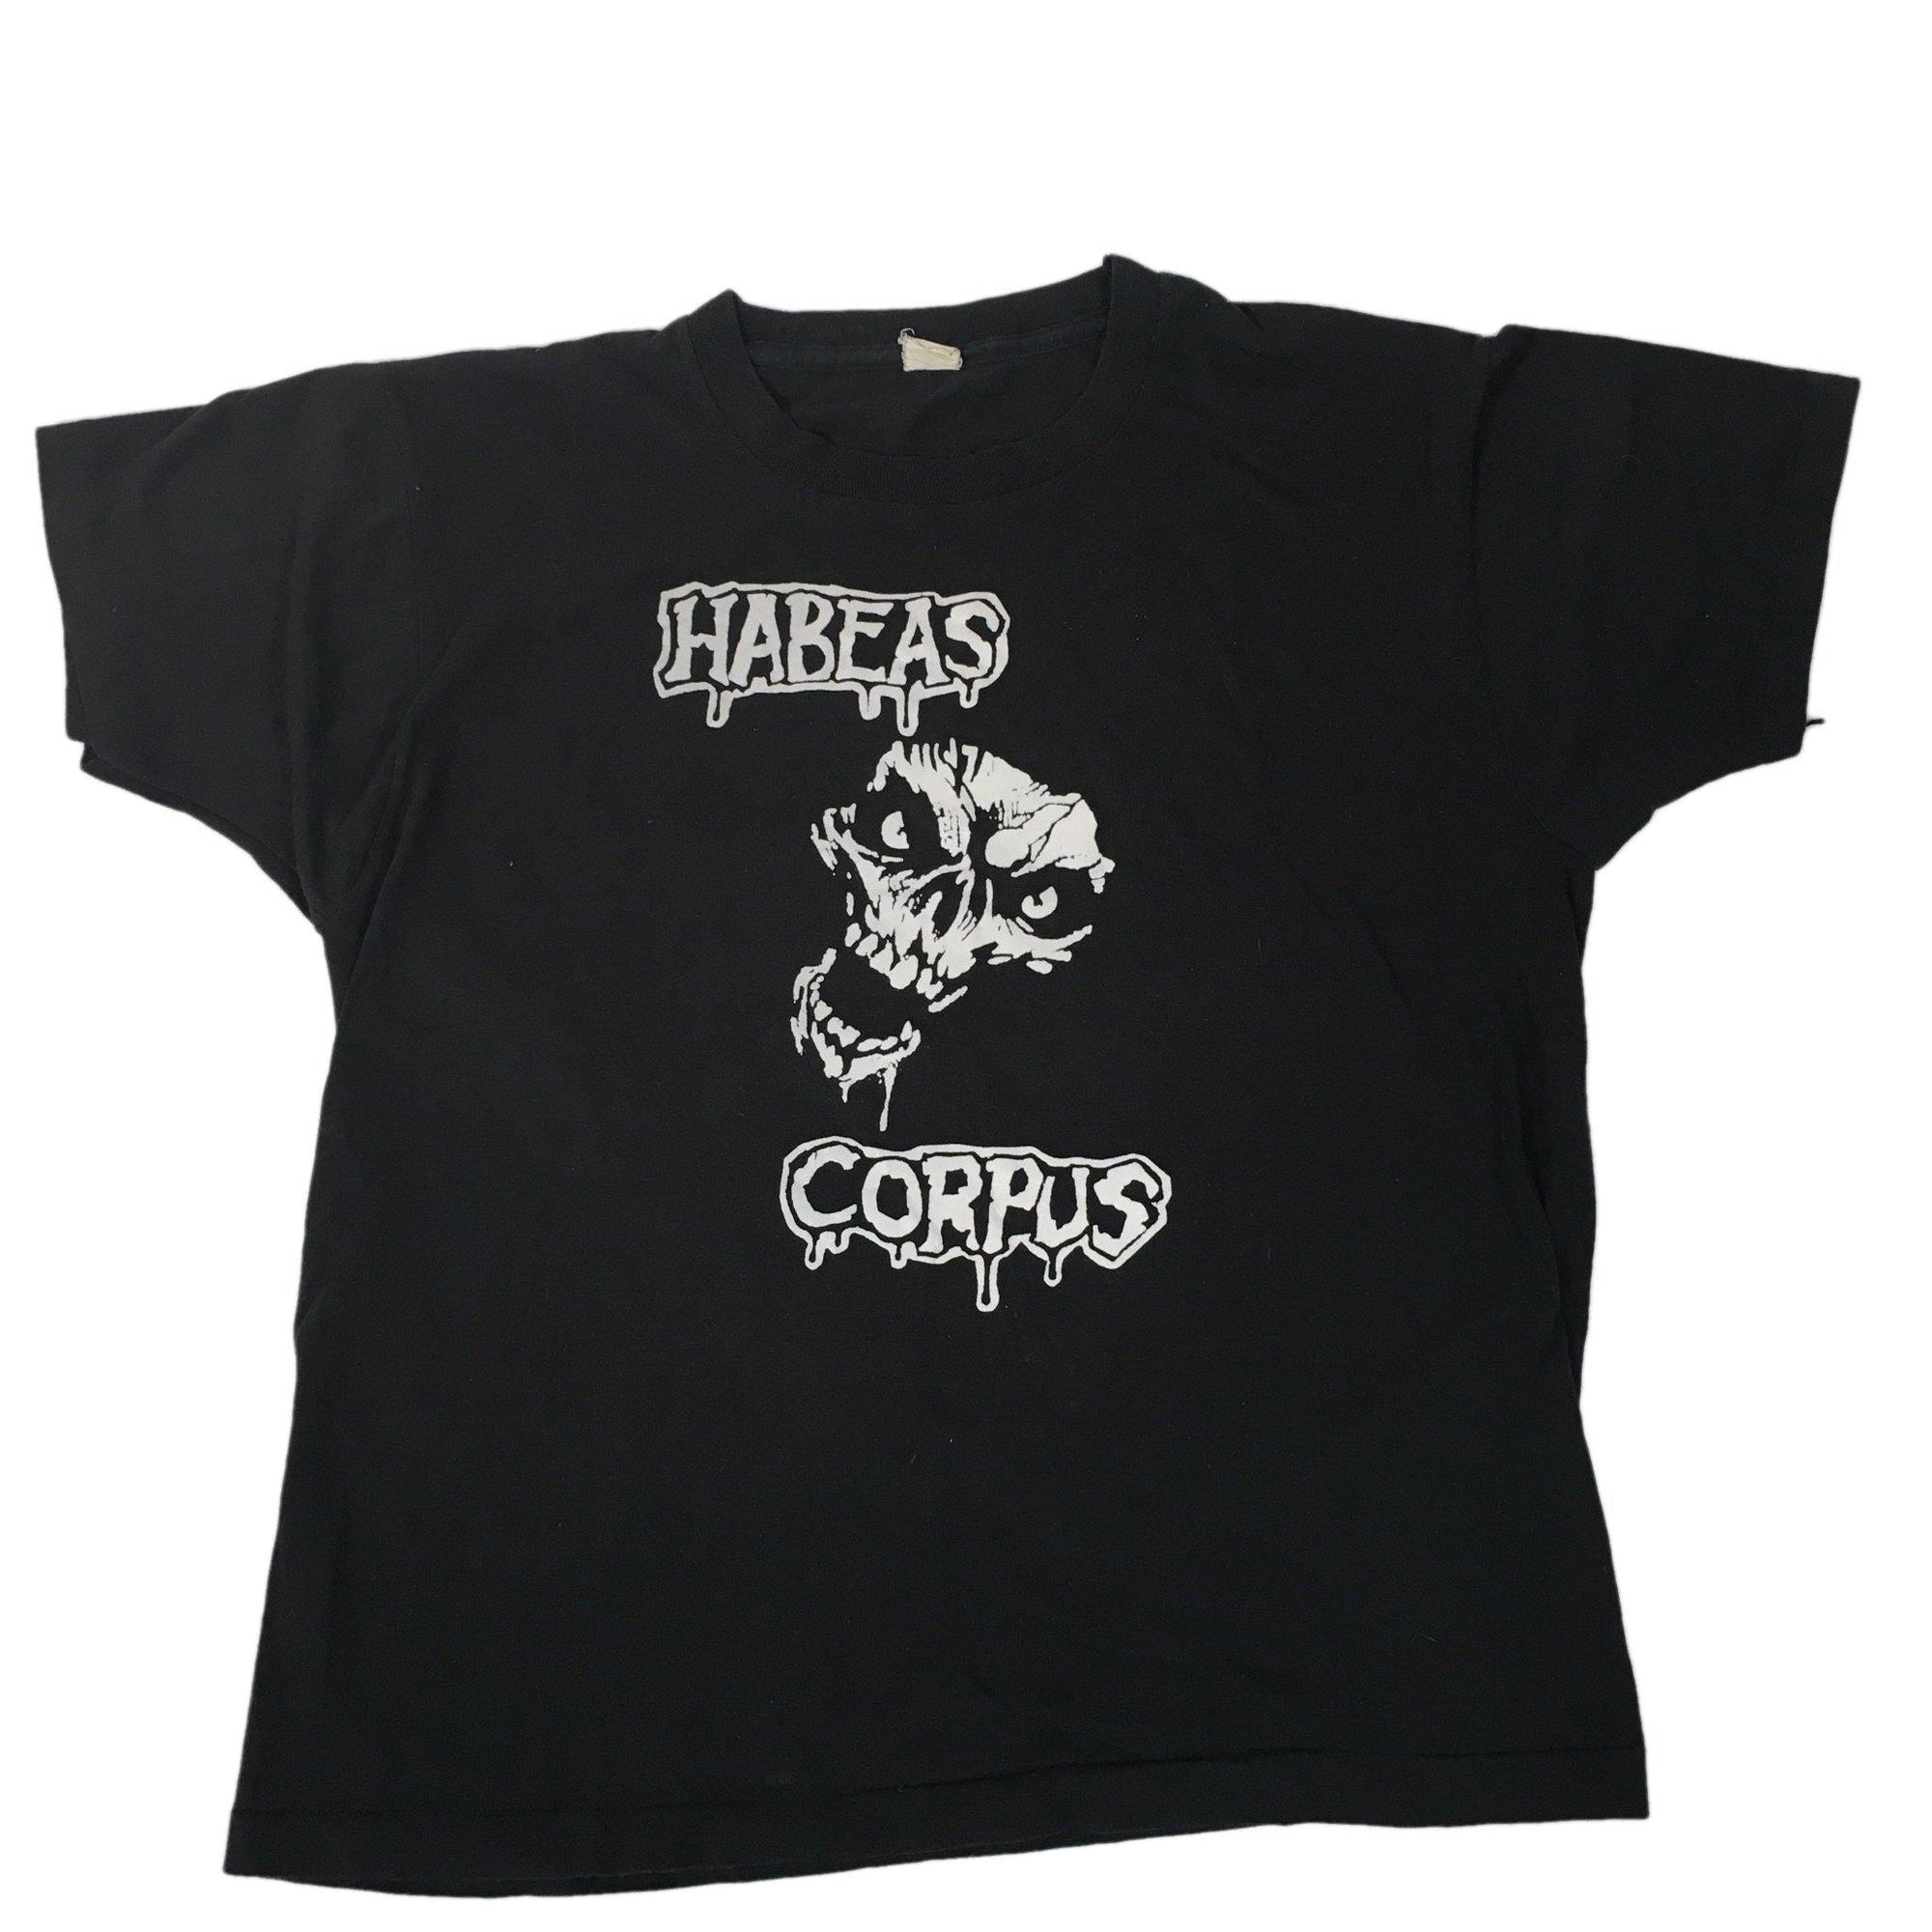 Vintage 1980s Habeas Corpus "Nardcore" T-Shirt - jointcustodydc